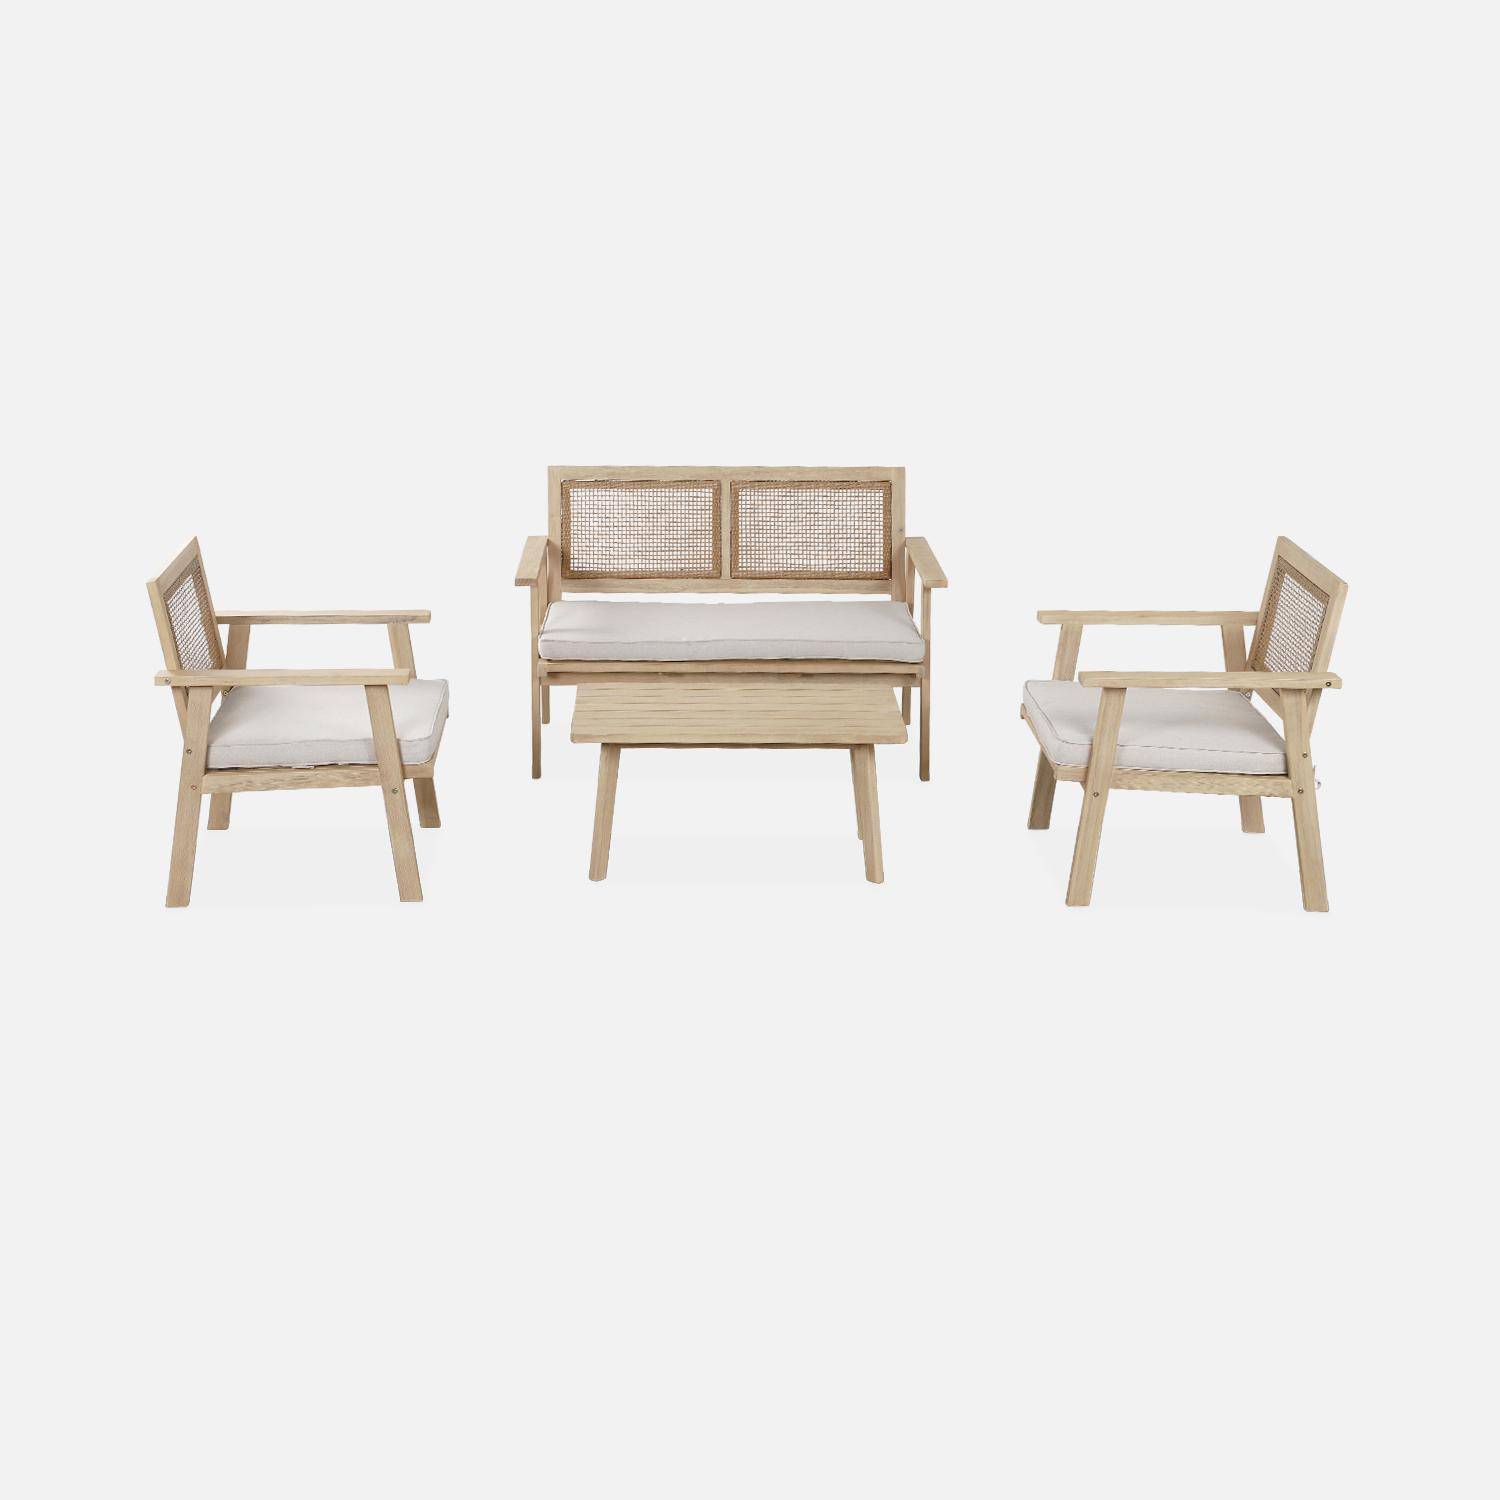 Gartenmöbel, quadratisches Rohrgeflecht 2-Sitzer-Sofa, Akazie hell gebürstet, 2 Sessel, 1 Couchtisch 117 x 64 x 74 cm Photo2